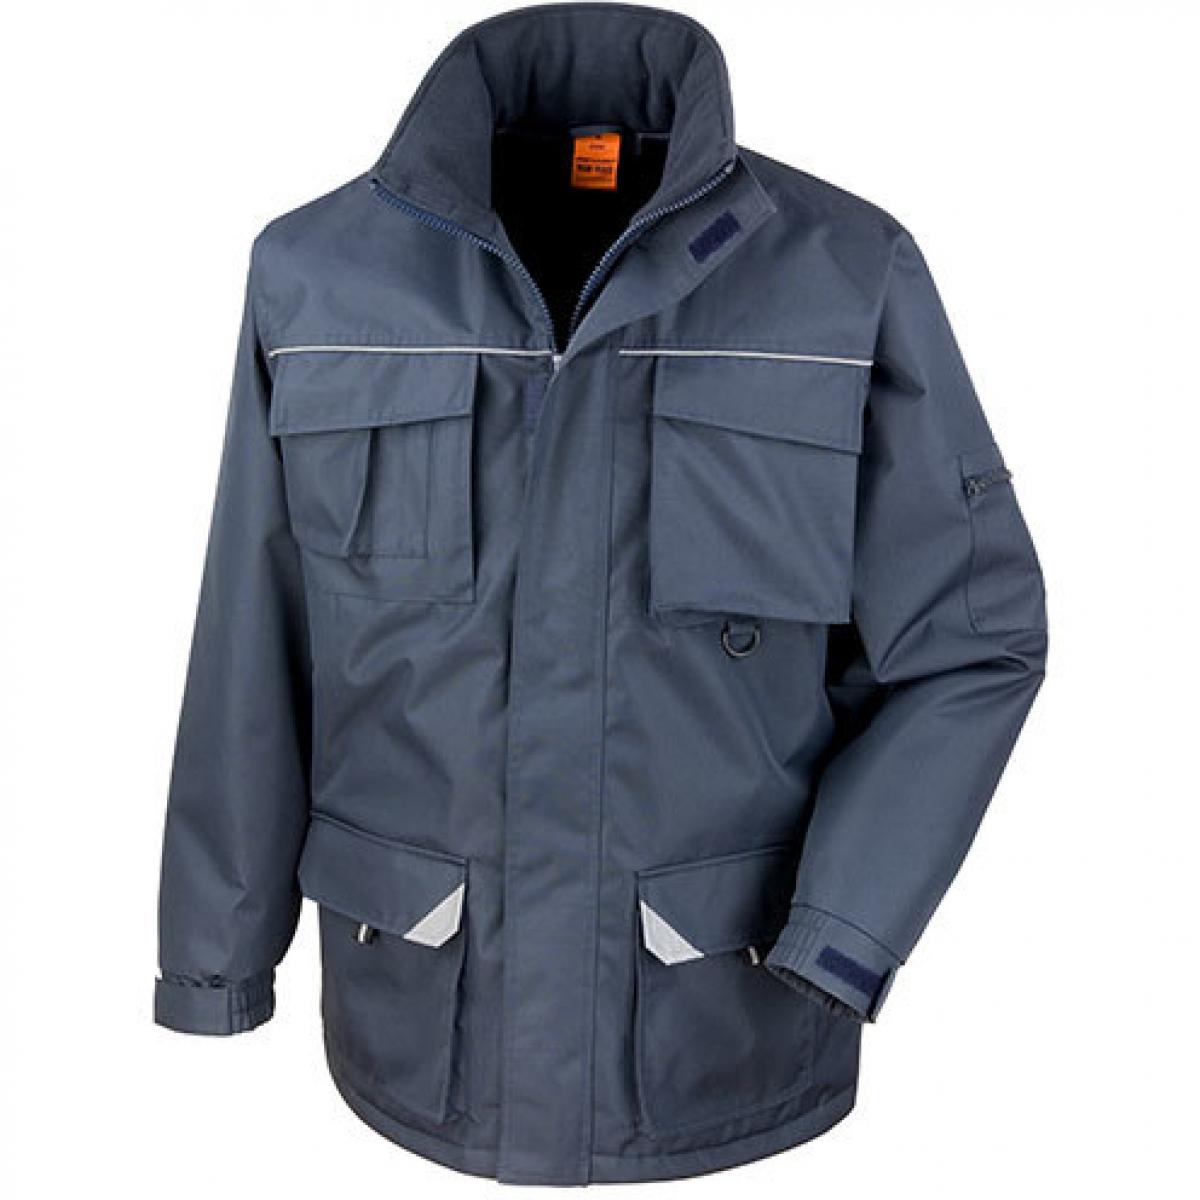 Hersteller: Result WORK-GUARD Herstellernummer: R301X Artikelbezeichnung: Sabre Long Coat Jacke Farbe: Navy